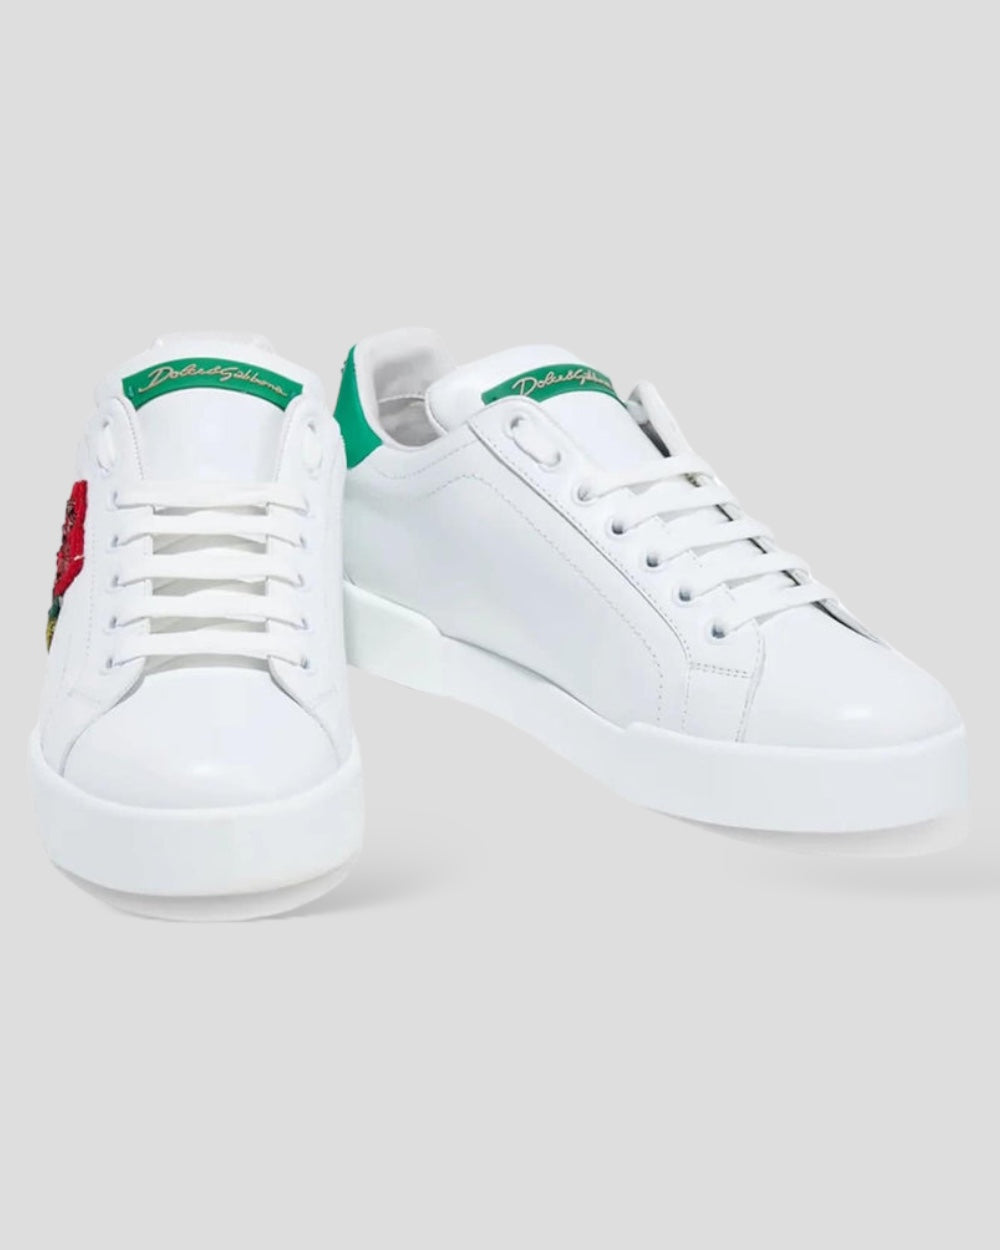 Dolce & Gabbana White Portofino Rose Classic Sneakers Shoes